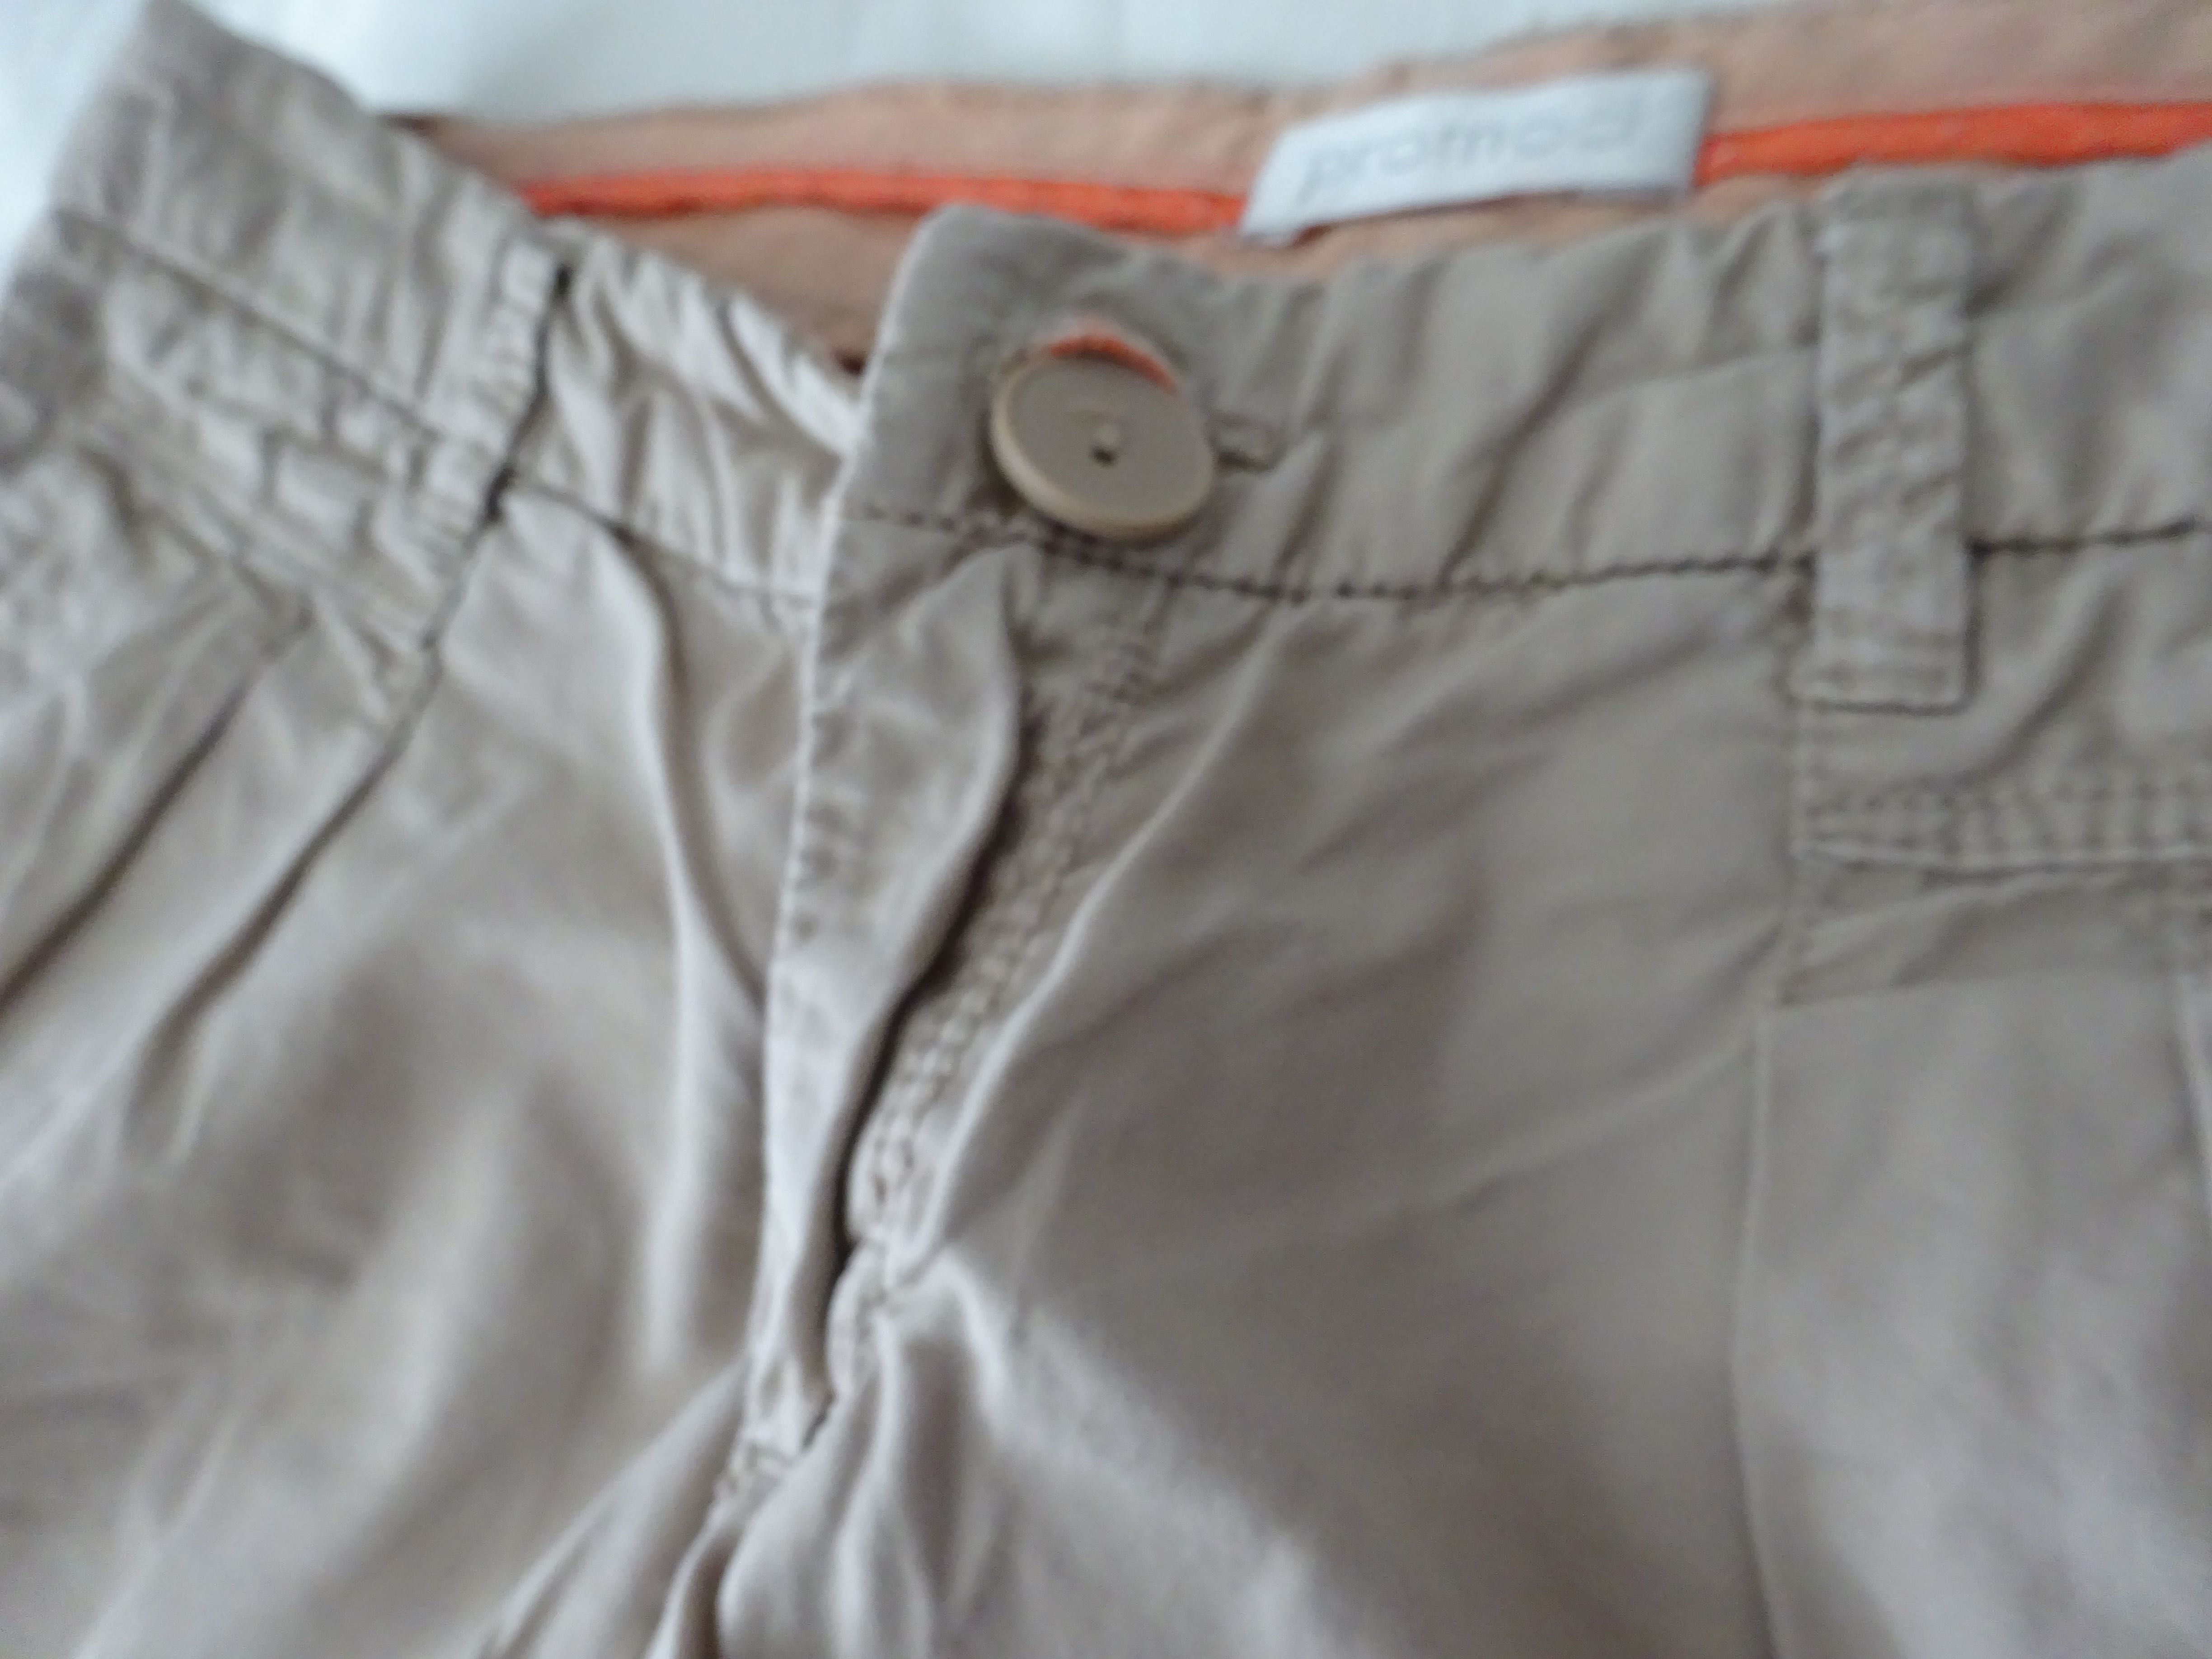 Promod класически панталон, колекция лято, р. S